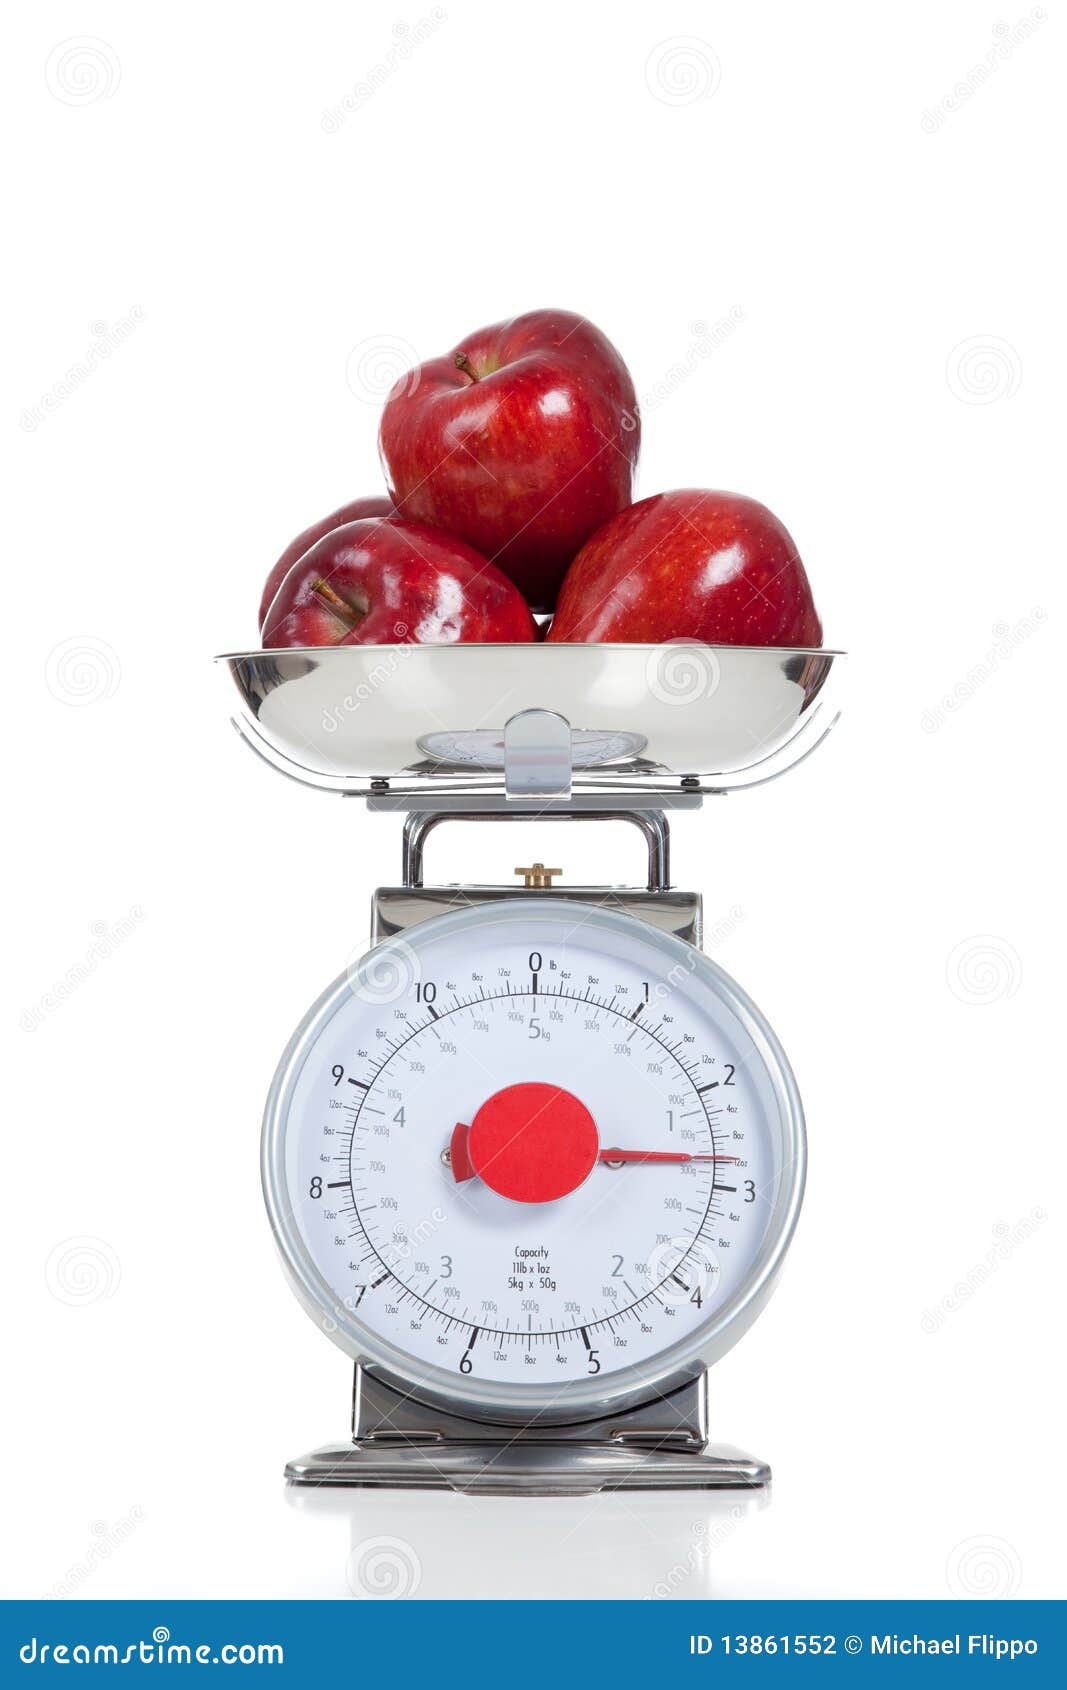 Rote Äpfel auf einer Skala auf Weiß. Drei rote Äpfel auf einer Nahrungsmittelskala auf einem weißen Hintergrund